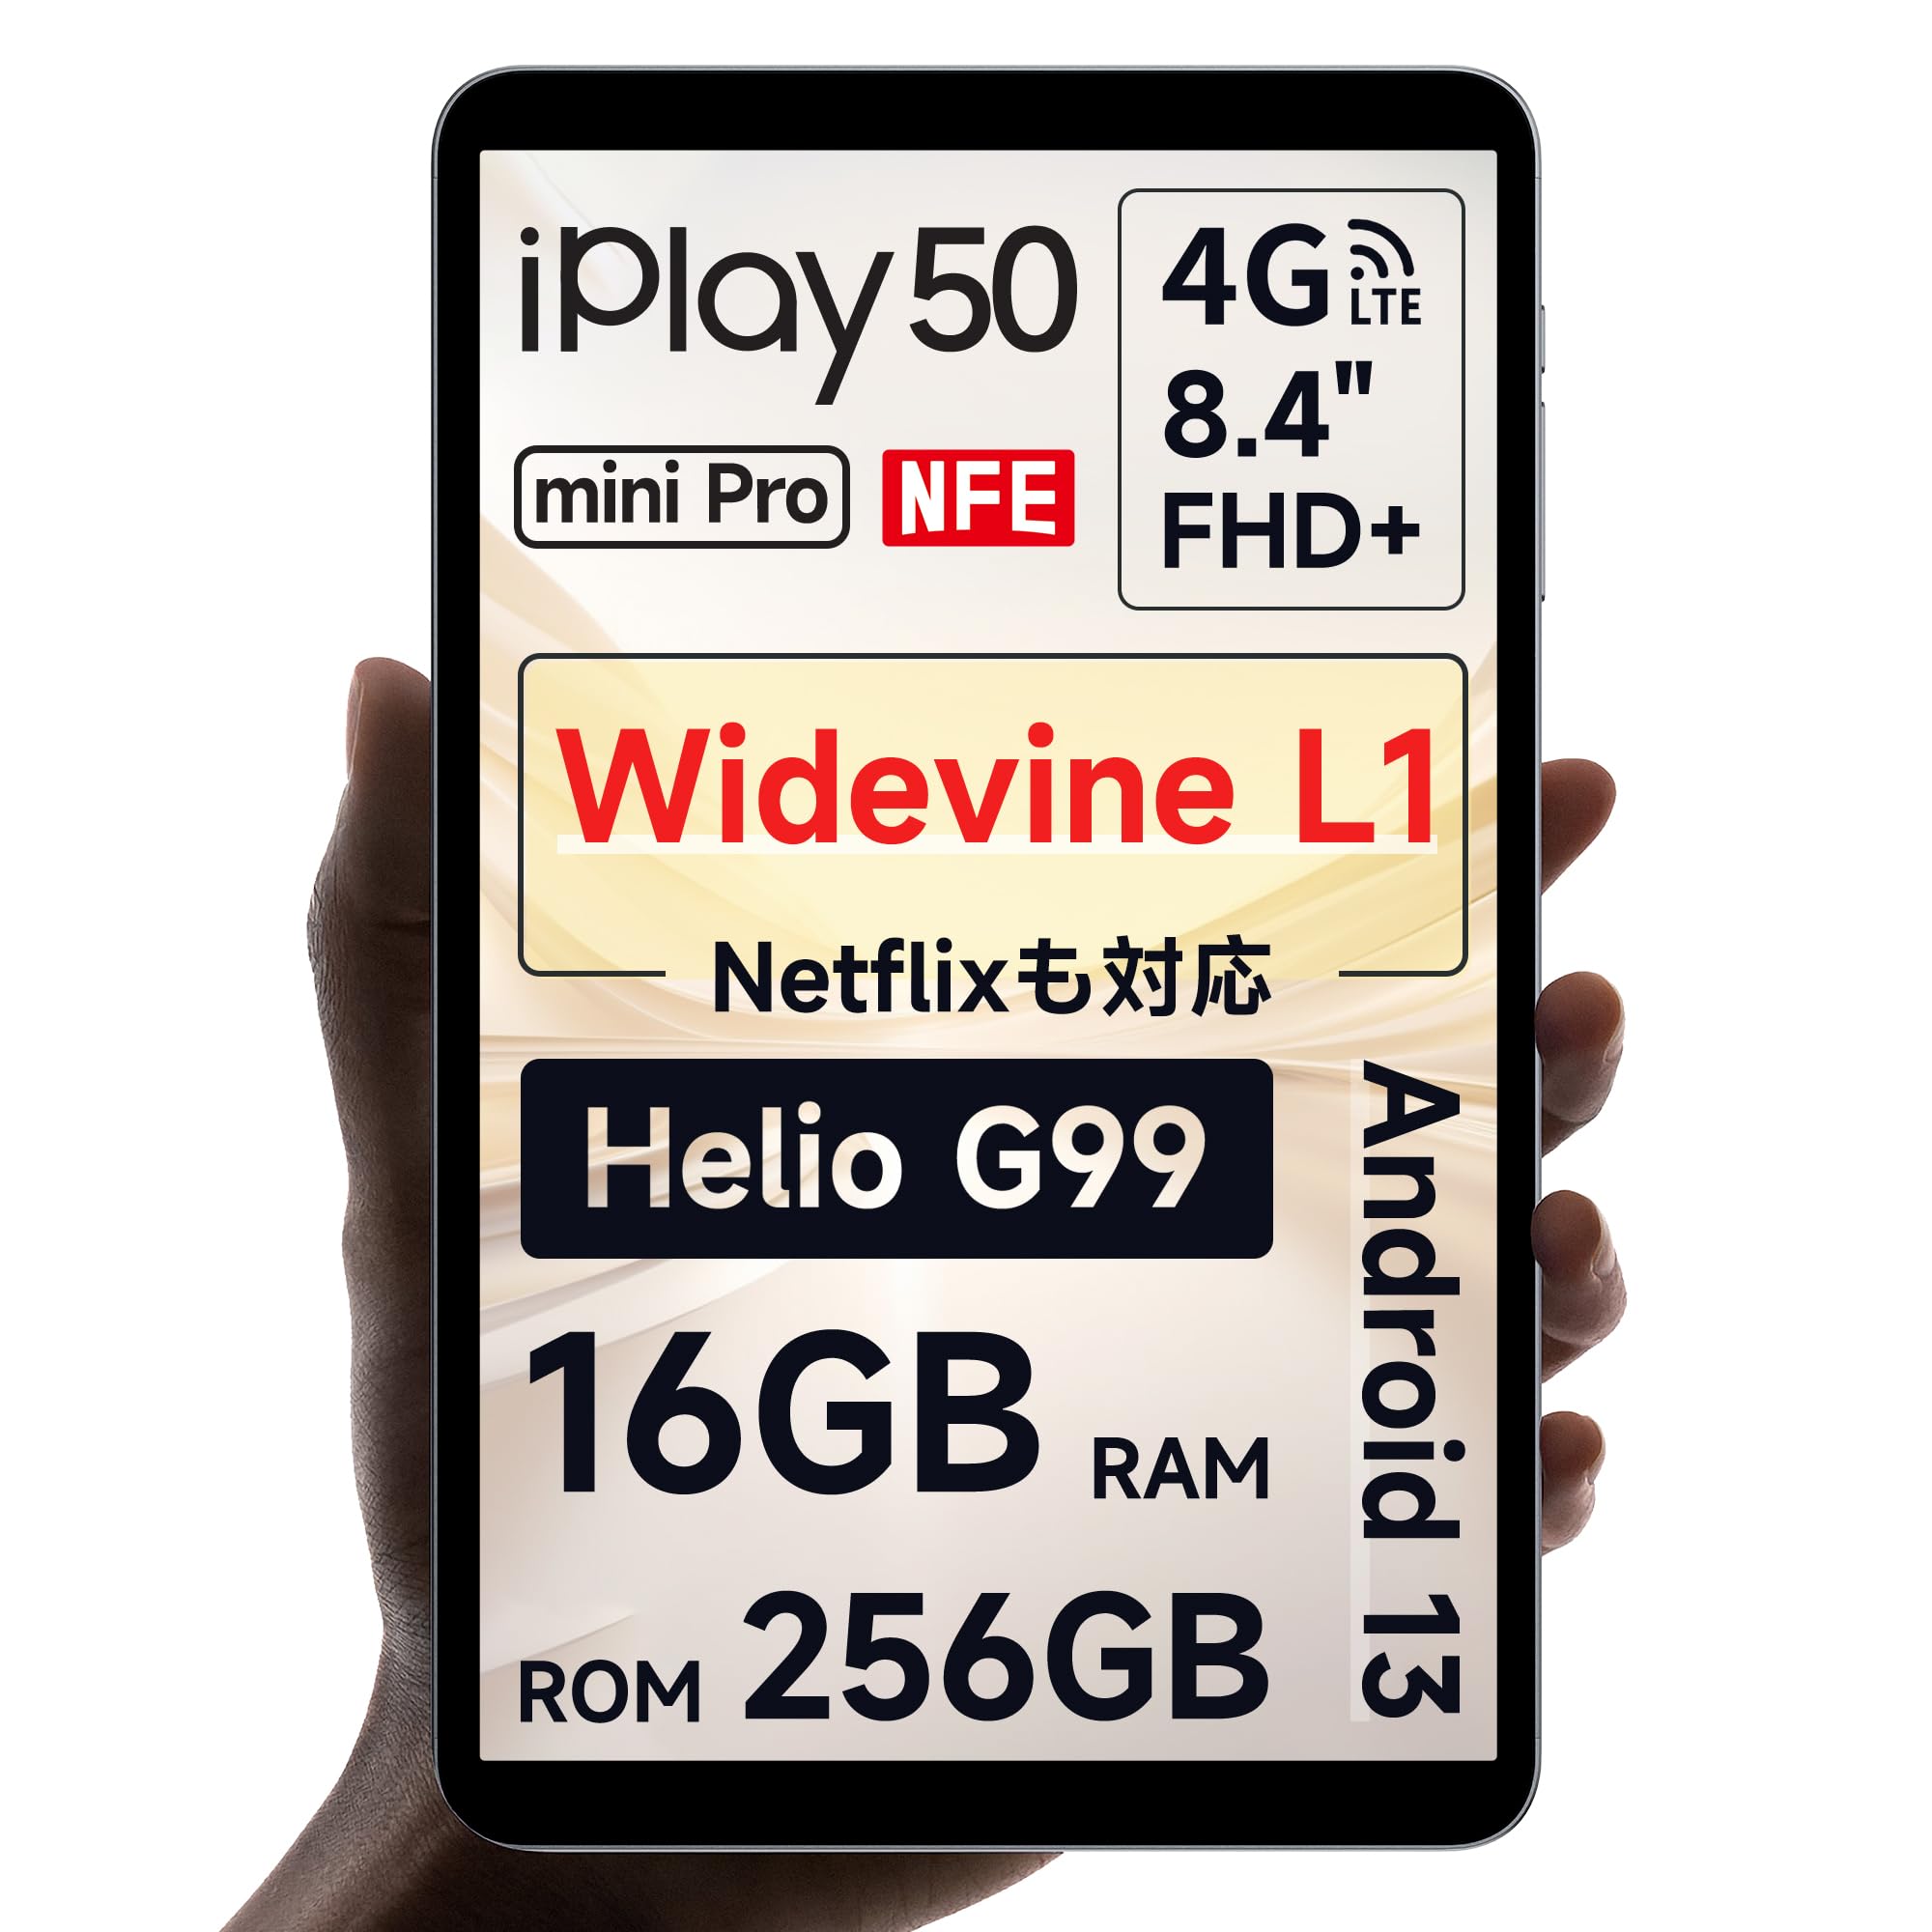 ALLDOCUBE iPlay50mini Pro NFE 8.4インチタブレット HelioG99 8コアCPU WidevineL1 1920×1200FHD+ In-Cellディスプレイ 16GB(8+8仮想) 256GB 512GB拡張 Andro